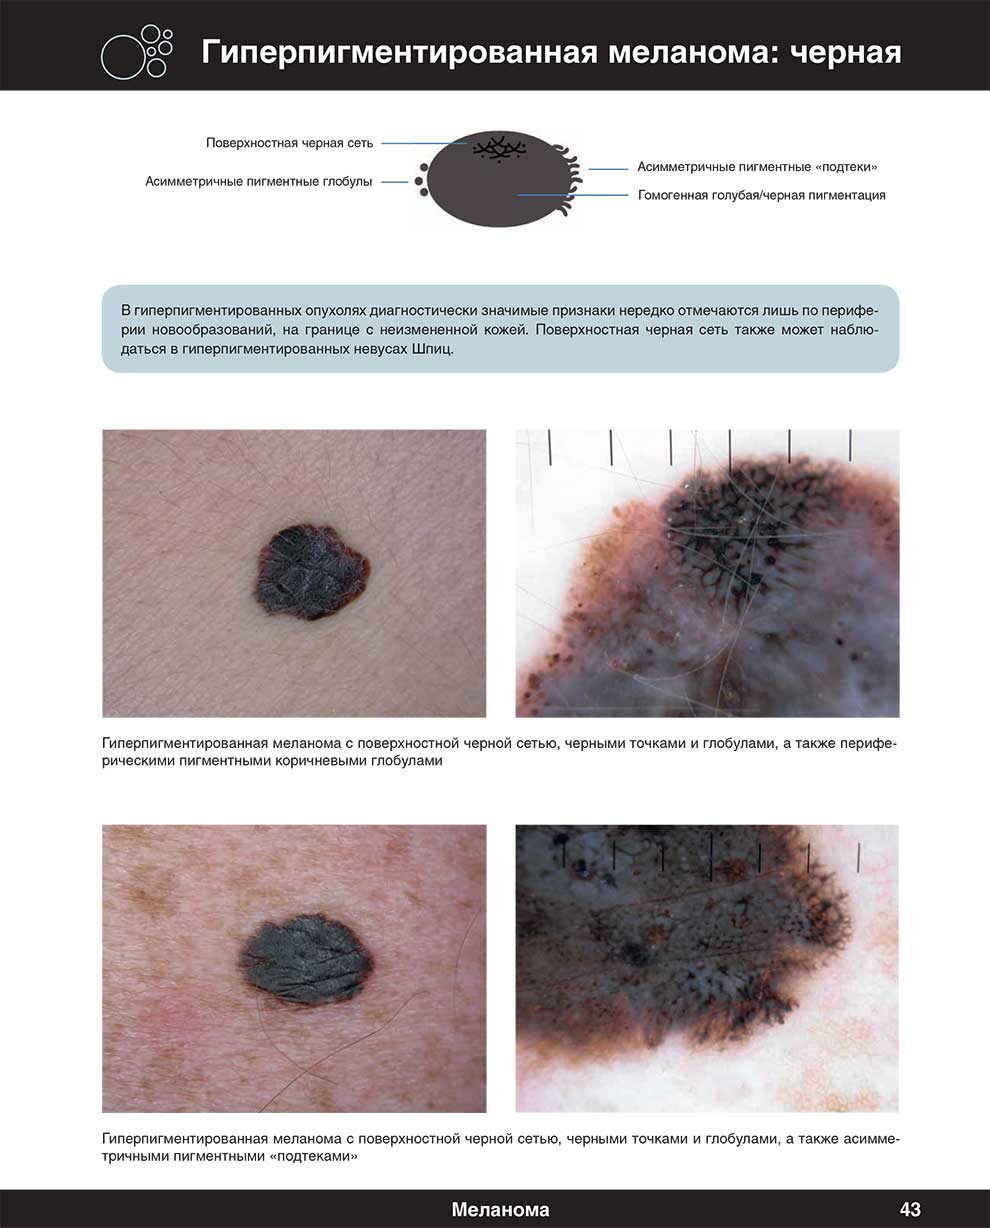 Гиперпигментированная меланома: черная